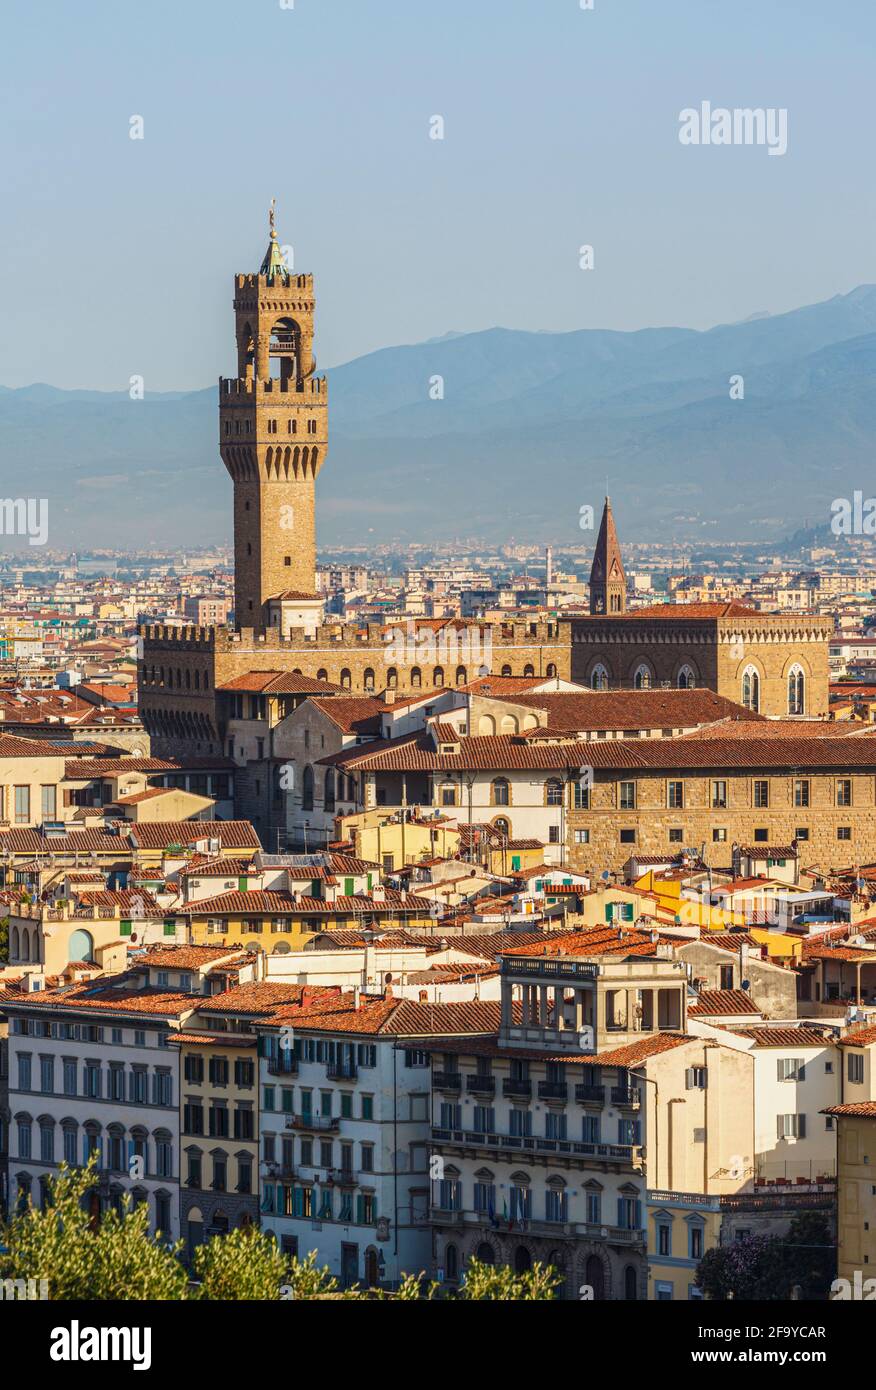 Florencia, Provincia de Florencia, Toscana, Italia. La torre distintiva del Palazzo Vecchio que se eleva sobre los tejados de la ciudad. El centro histórico de Florenc Foto de stock